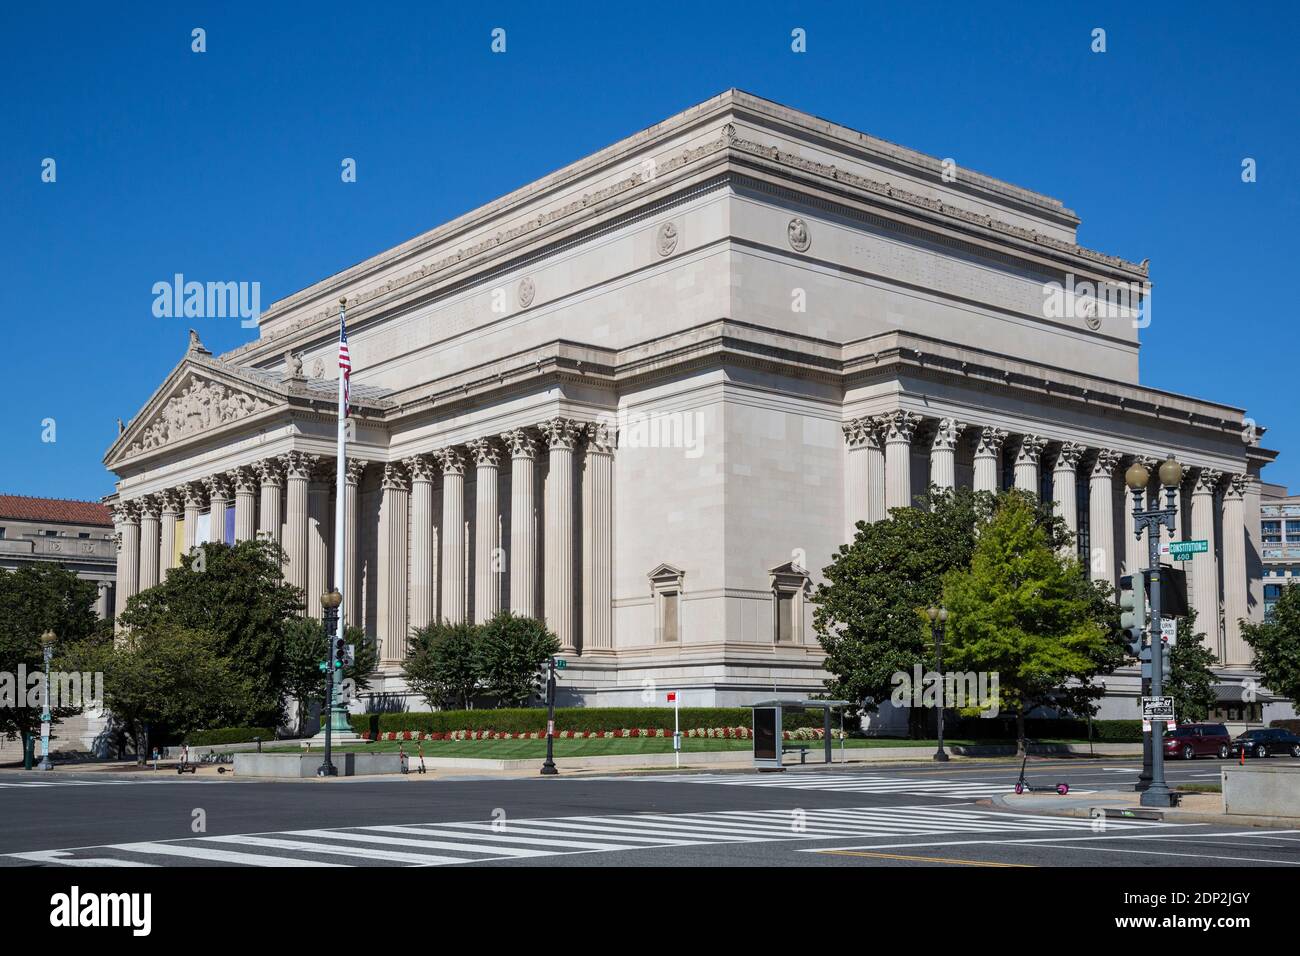 Archives nationales, Washington DC, États-Unis. La Déclaration d'indépendance et la Constitution des États-Unis se trouvent dans ce bâtiment. Banque D'Images